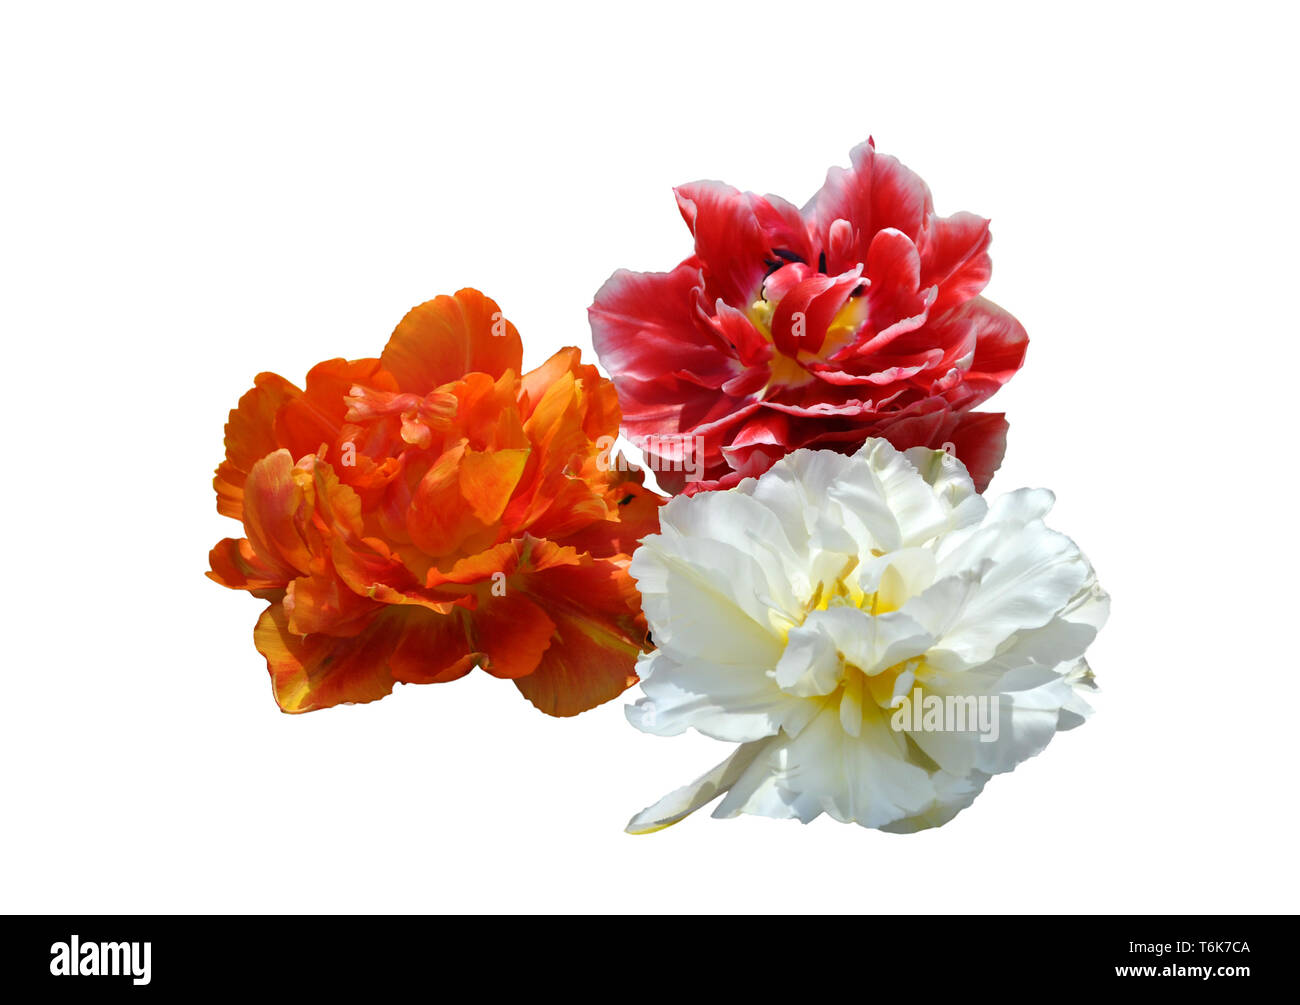 Bianco, arancione e rosso peonia fioritura tulipani isolati su sfondo bianco Foto Stock